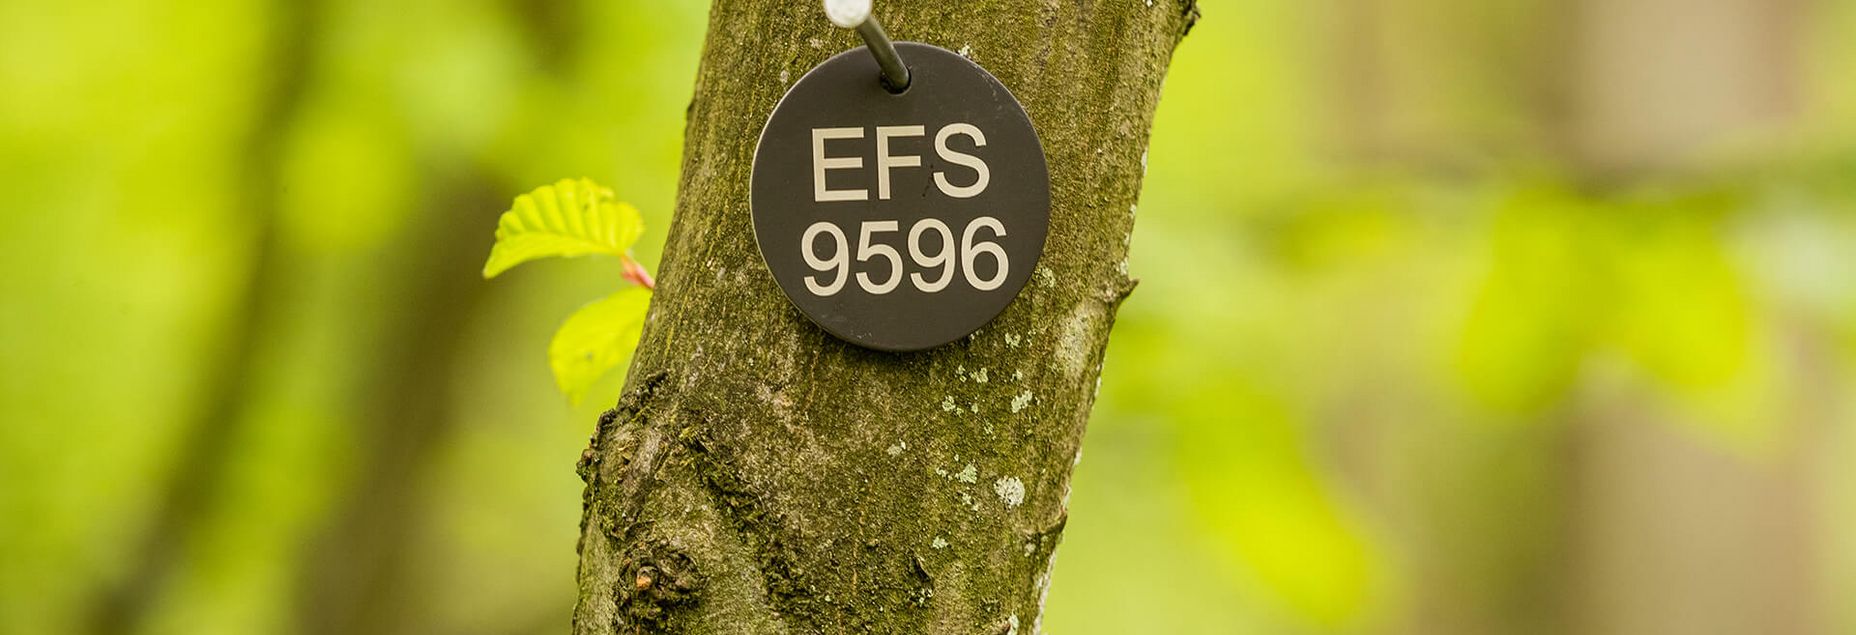 FriedWald-Onlineshop EFS 9596